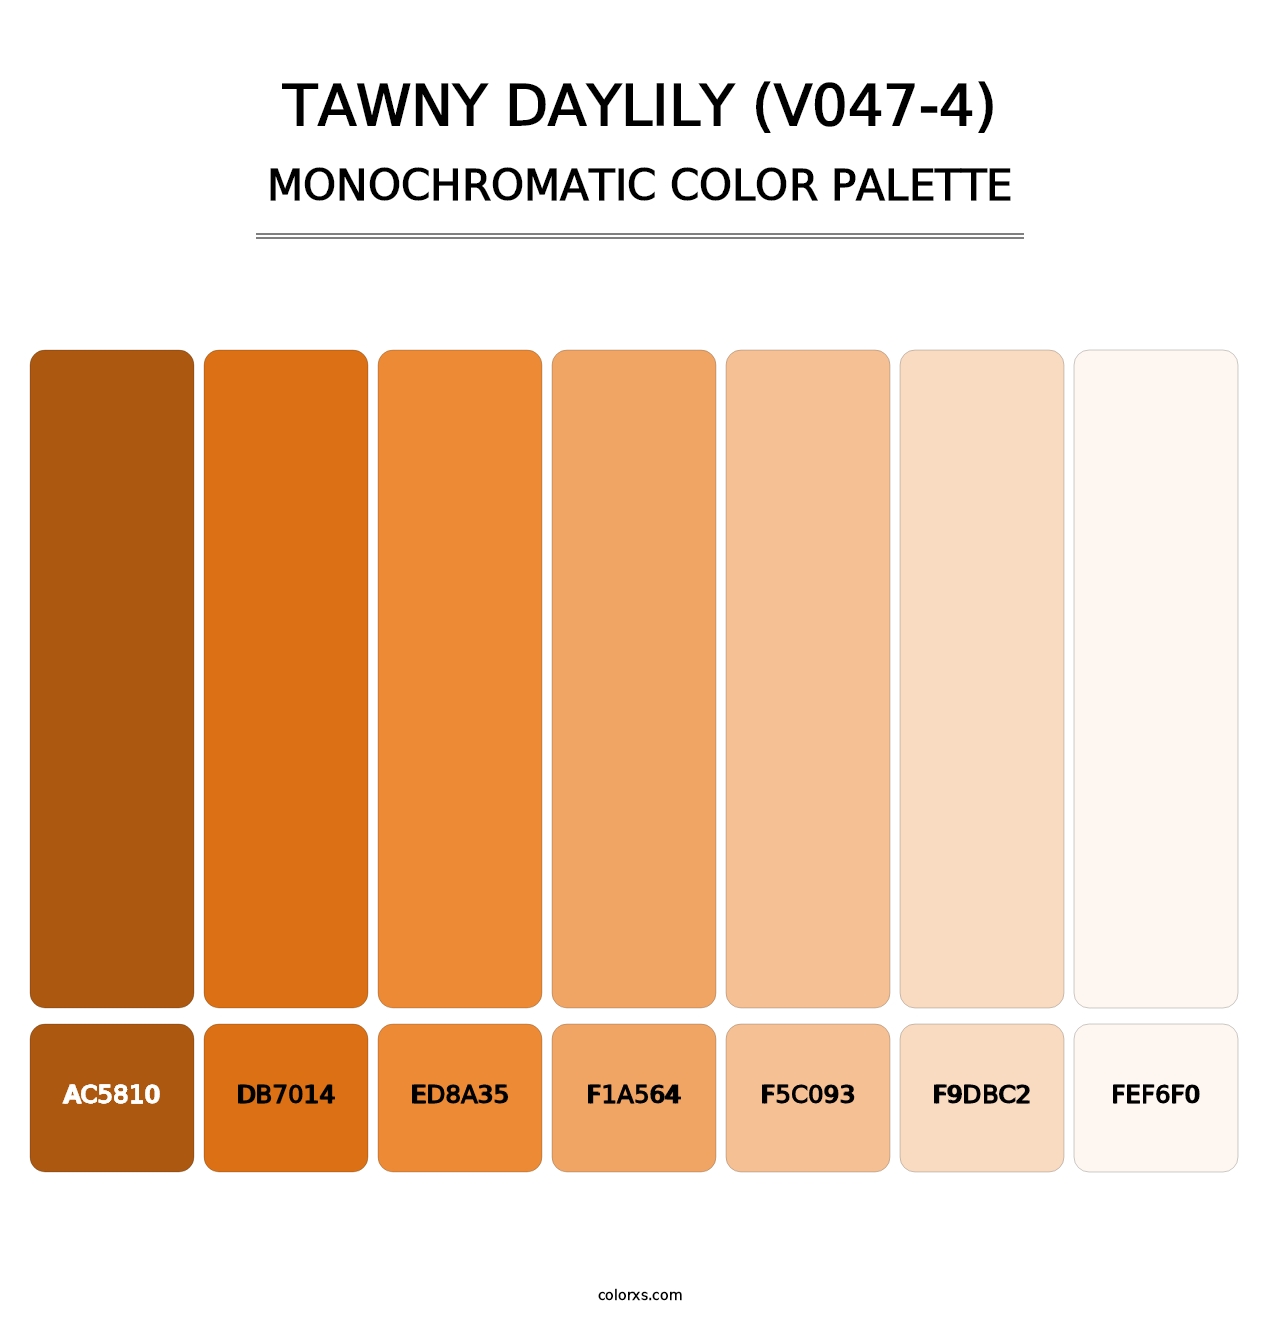 Tawny Daylily (V047-4) - Monochromatic Color Palette